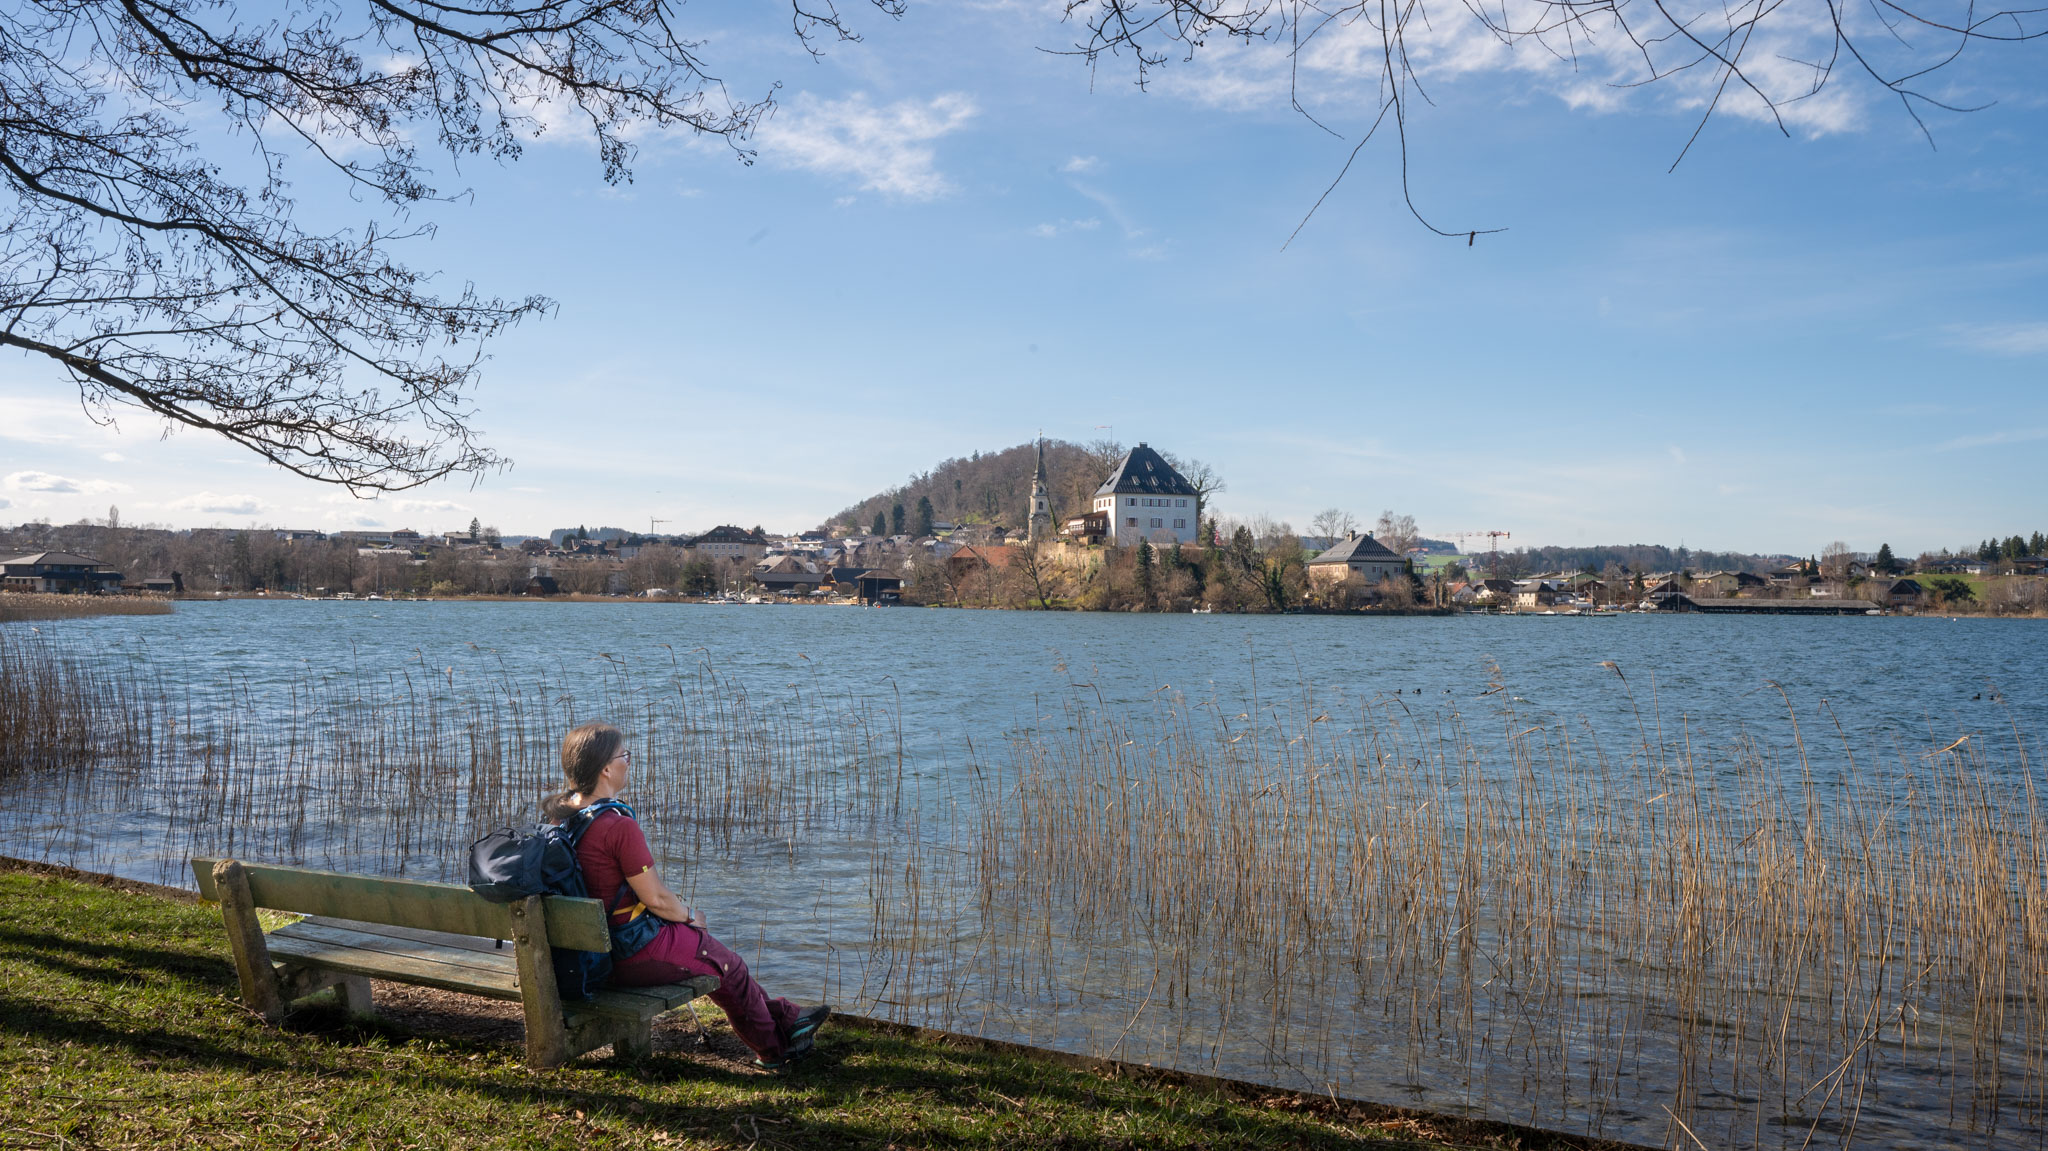 Maria auf Parkbank am Seeufer mit Blick auf das Schloss Mattsee